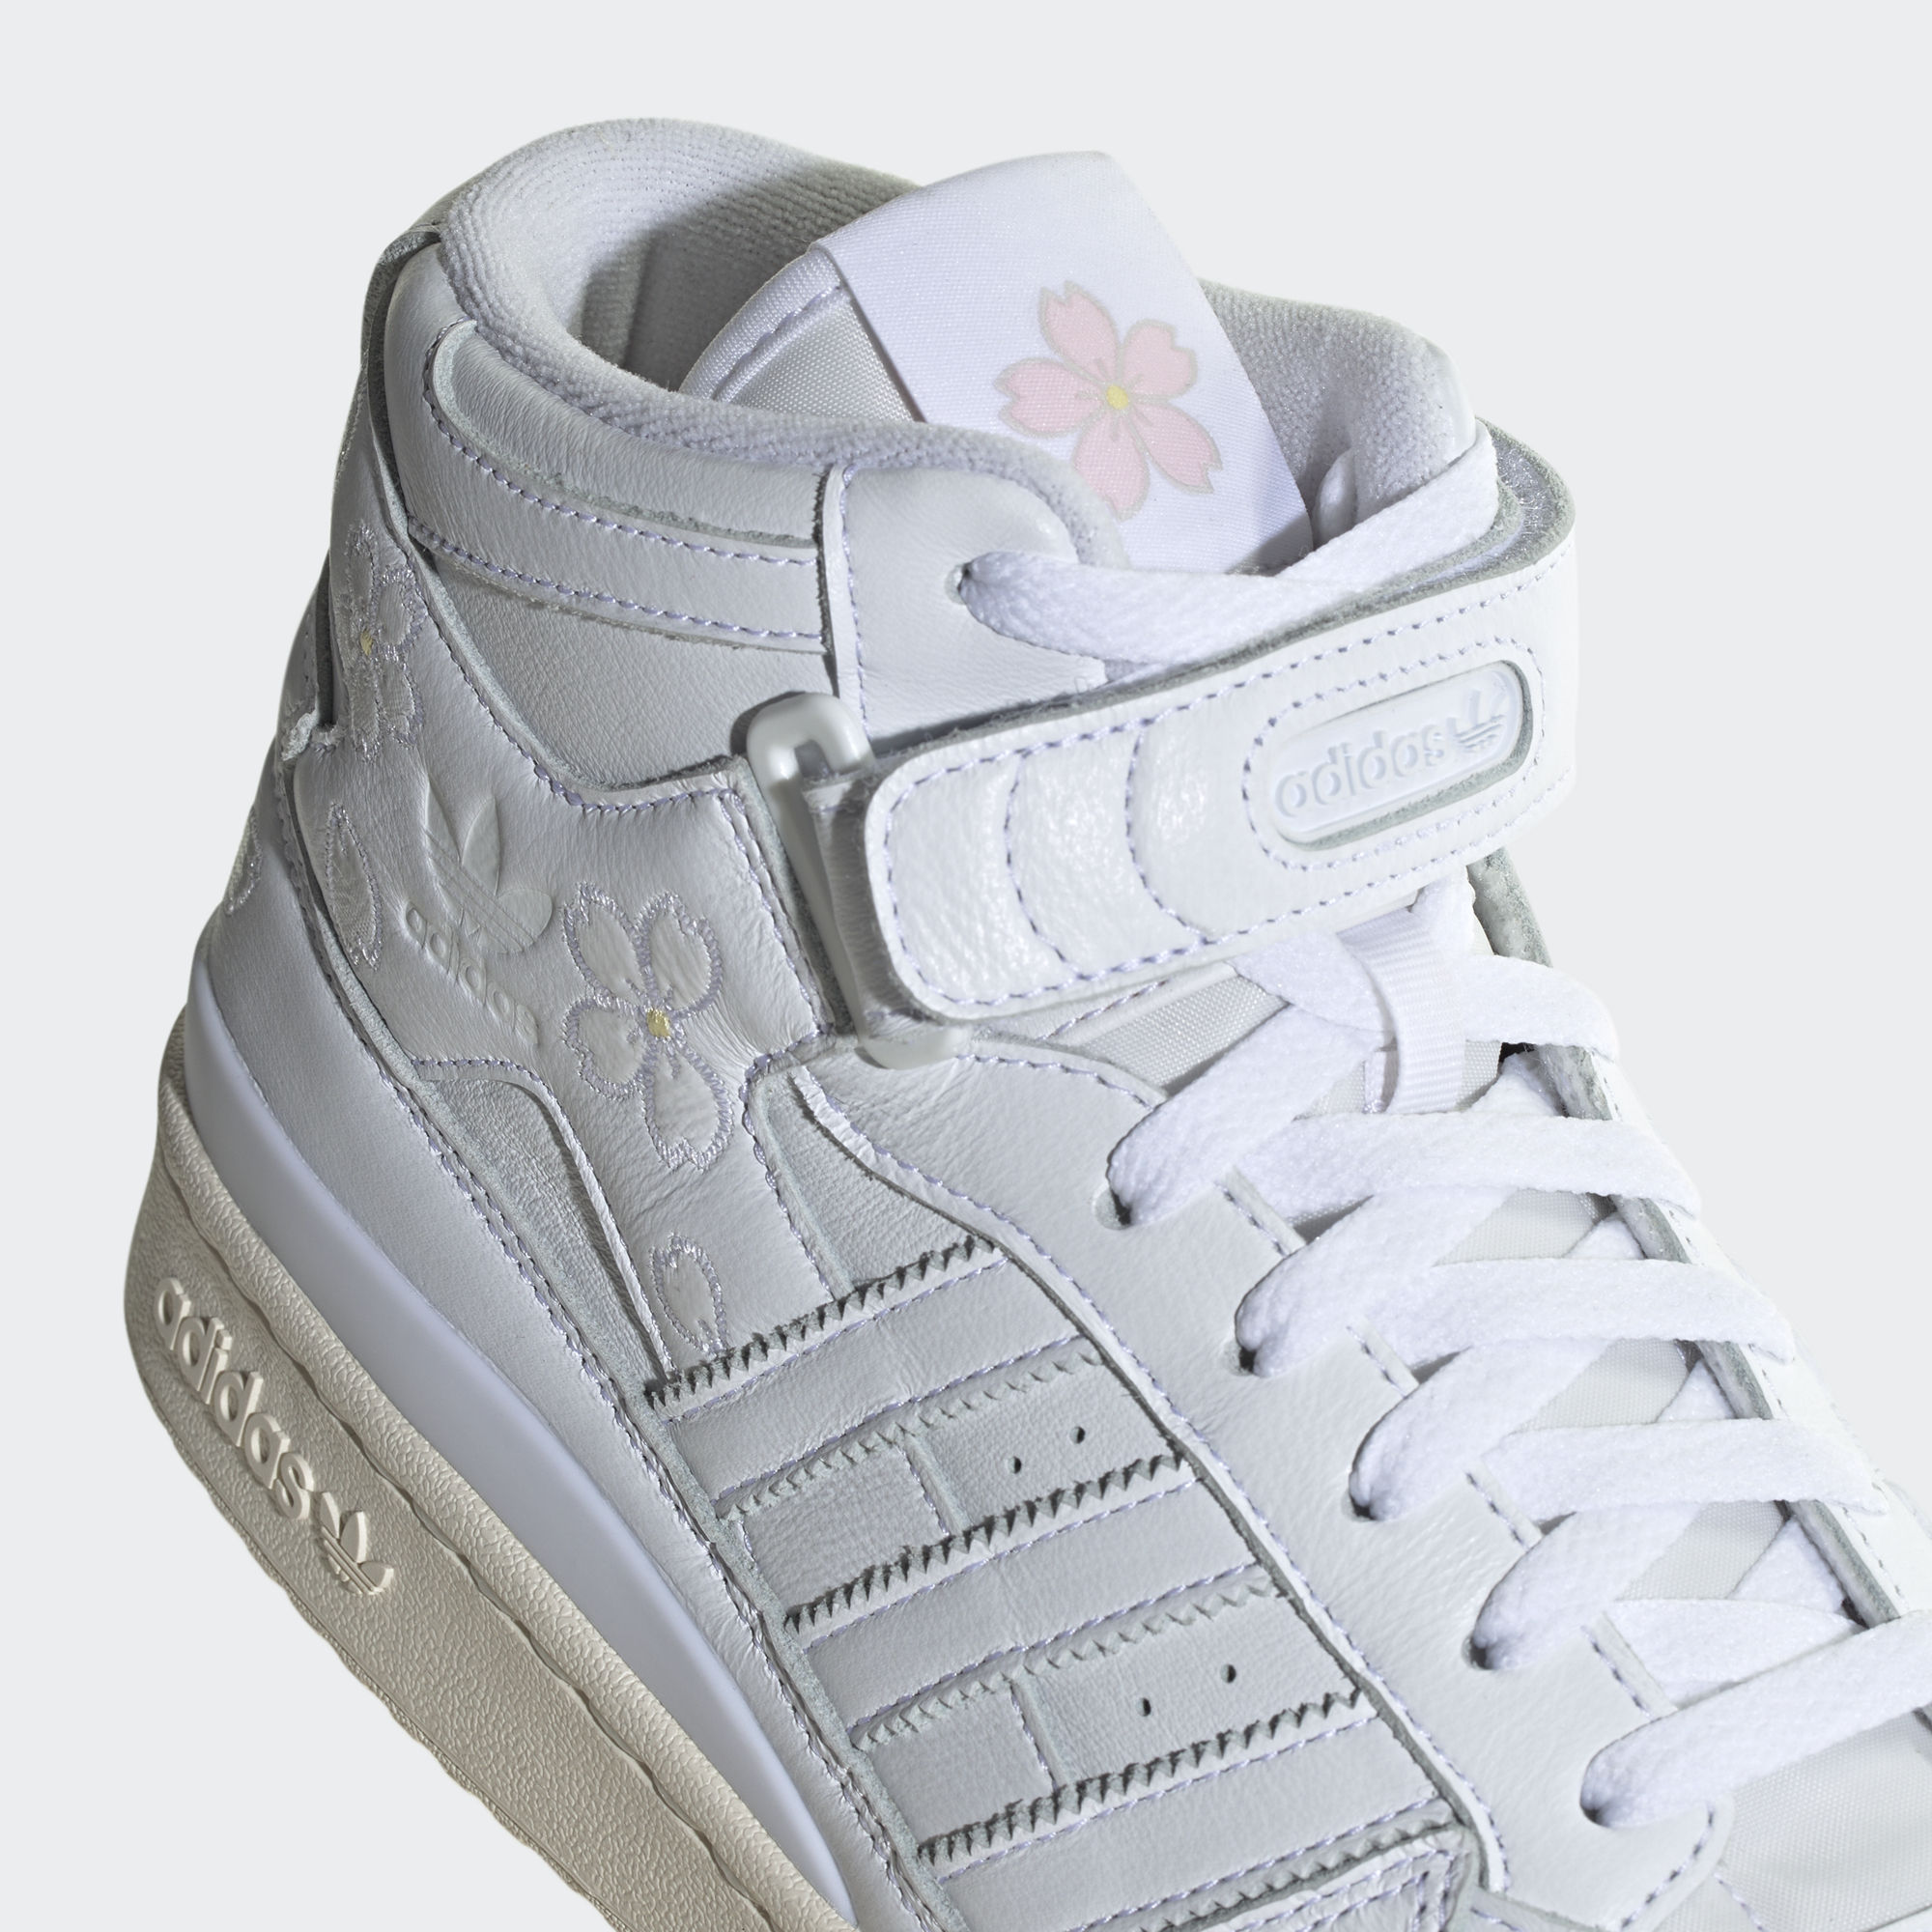 FORUM MID HANAMI 運動鞋- 白色| 男子| adidas(愛迪達)香港官方網上商店